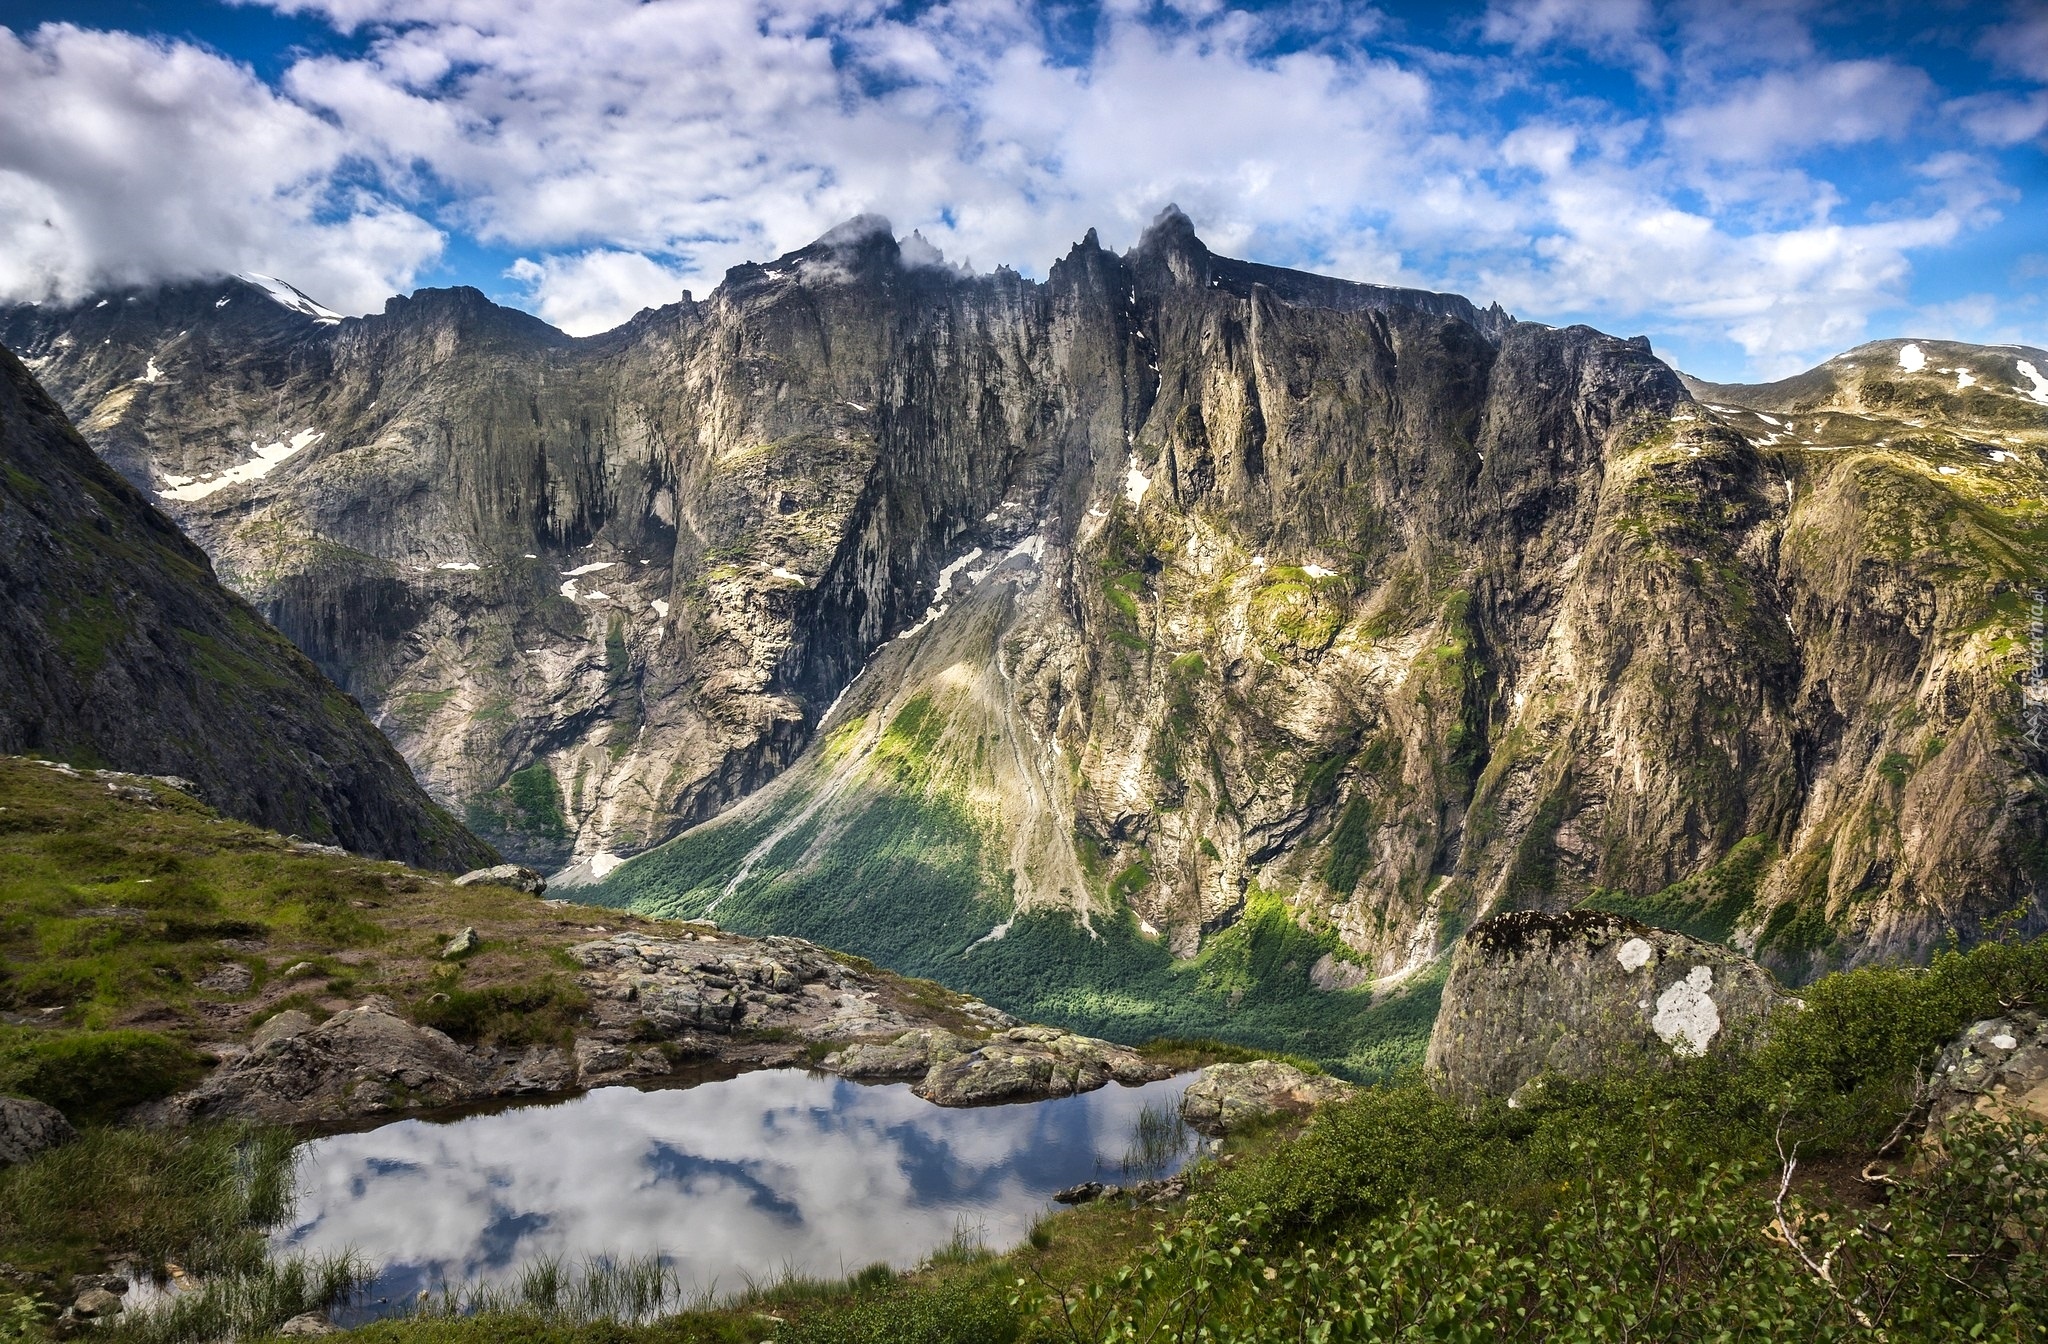 Norwegia, Okręg Møre og Romsdal, Dolina Romsdalen, Góry Romsdalsalpane, Ściana Trolli - Trollveggen